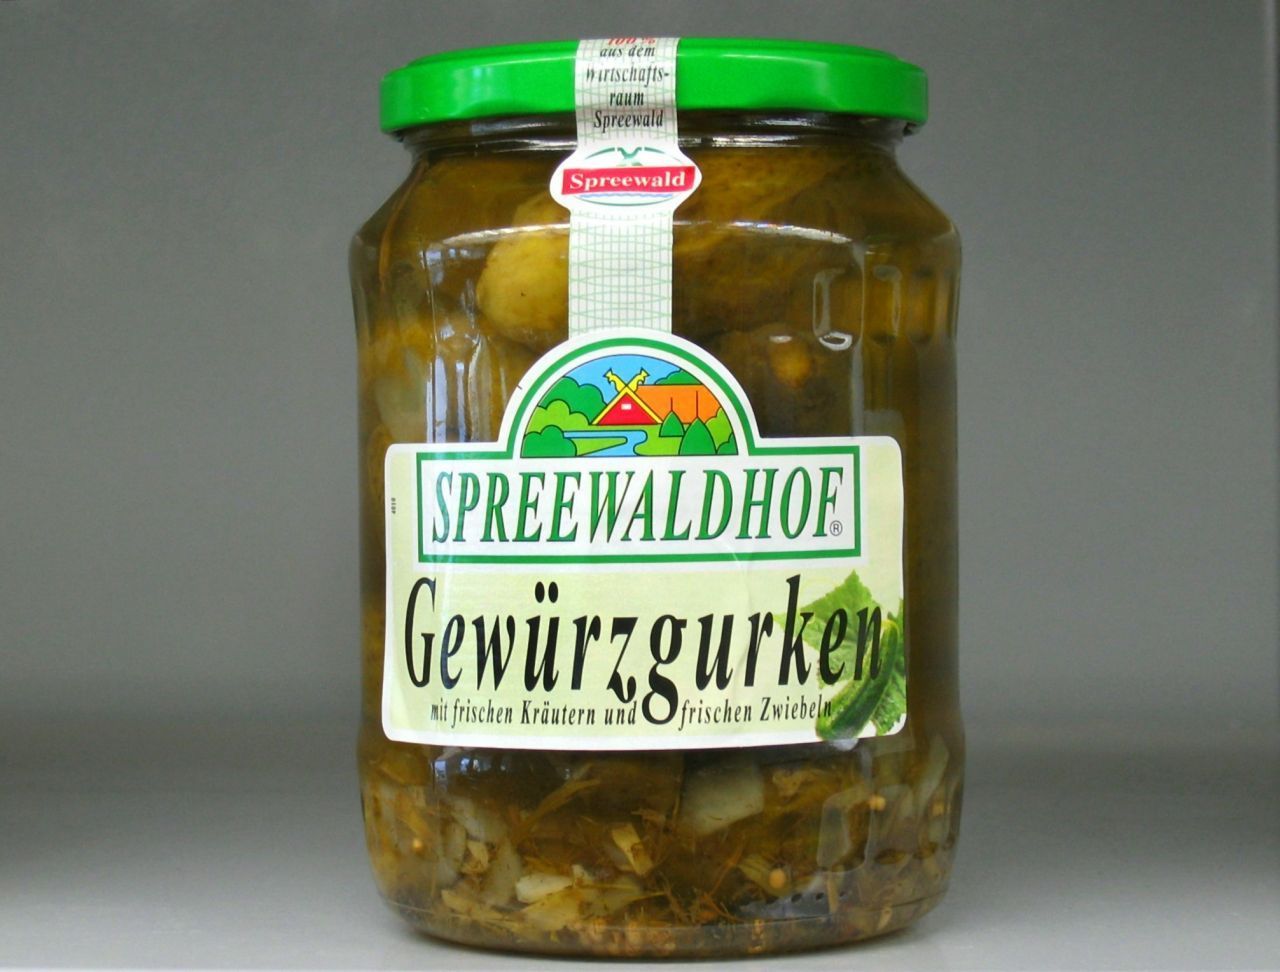 Spreewälder Gurken waren in der DDR sehr beliebt. Die Wiedervereinigung wirkte bedrohlich auf die Delikatesse. Ein Familienunternehmen aus dem Westen rettete die sauren Gurken.